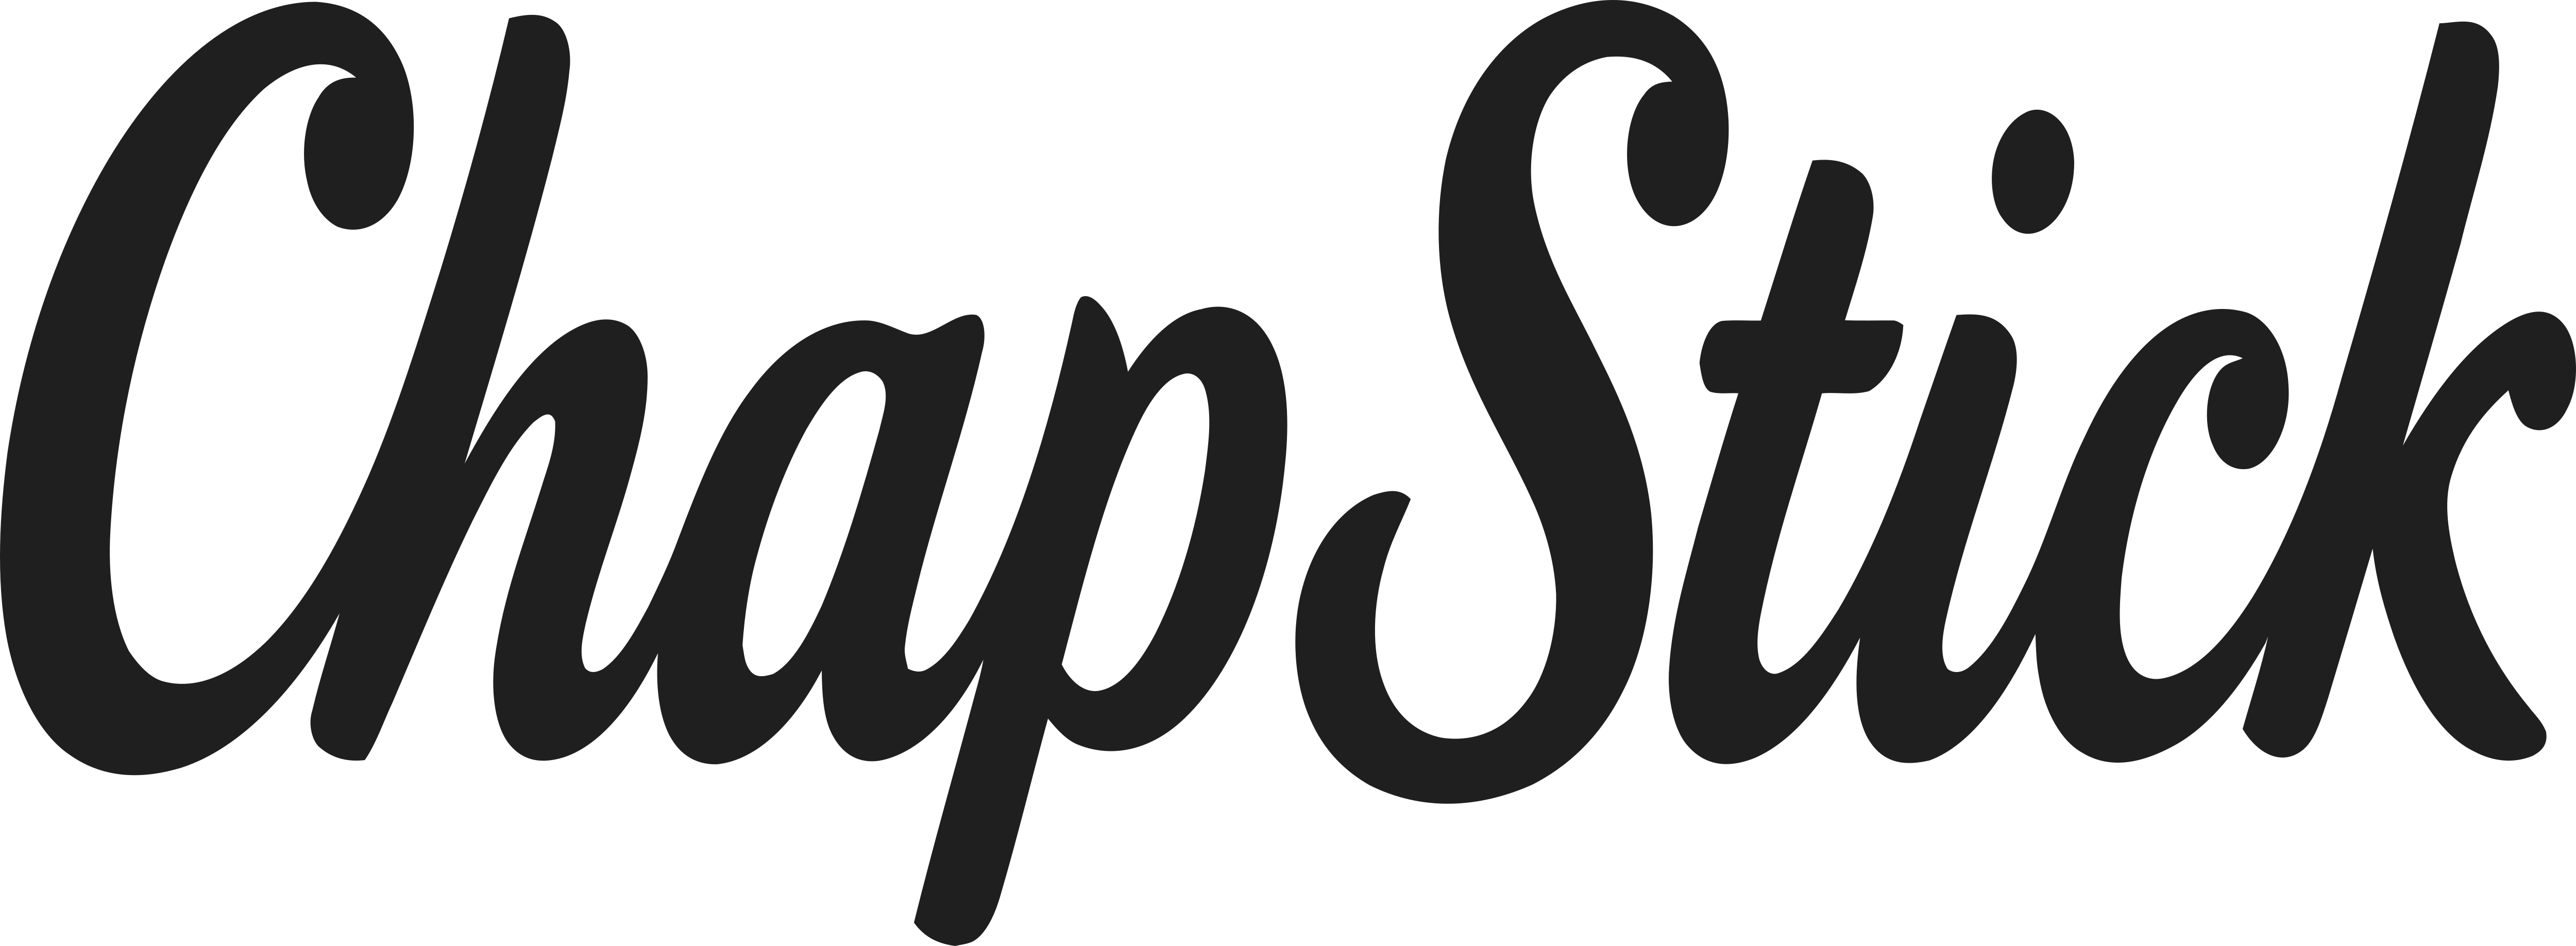 Chapstick Logo - Chapstick – Logos Download